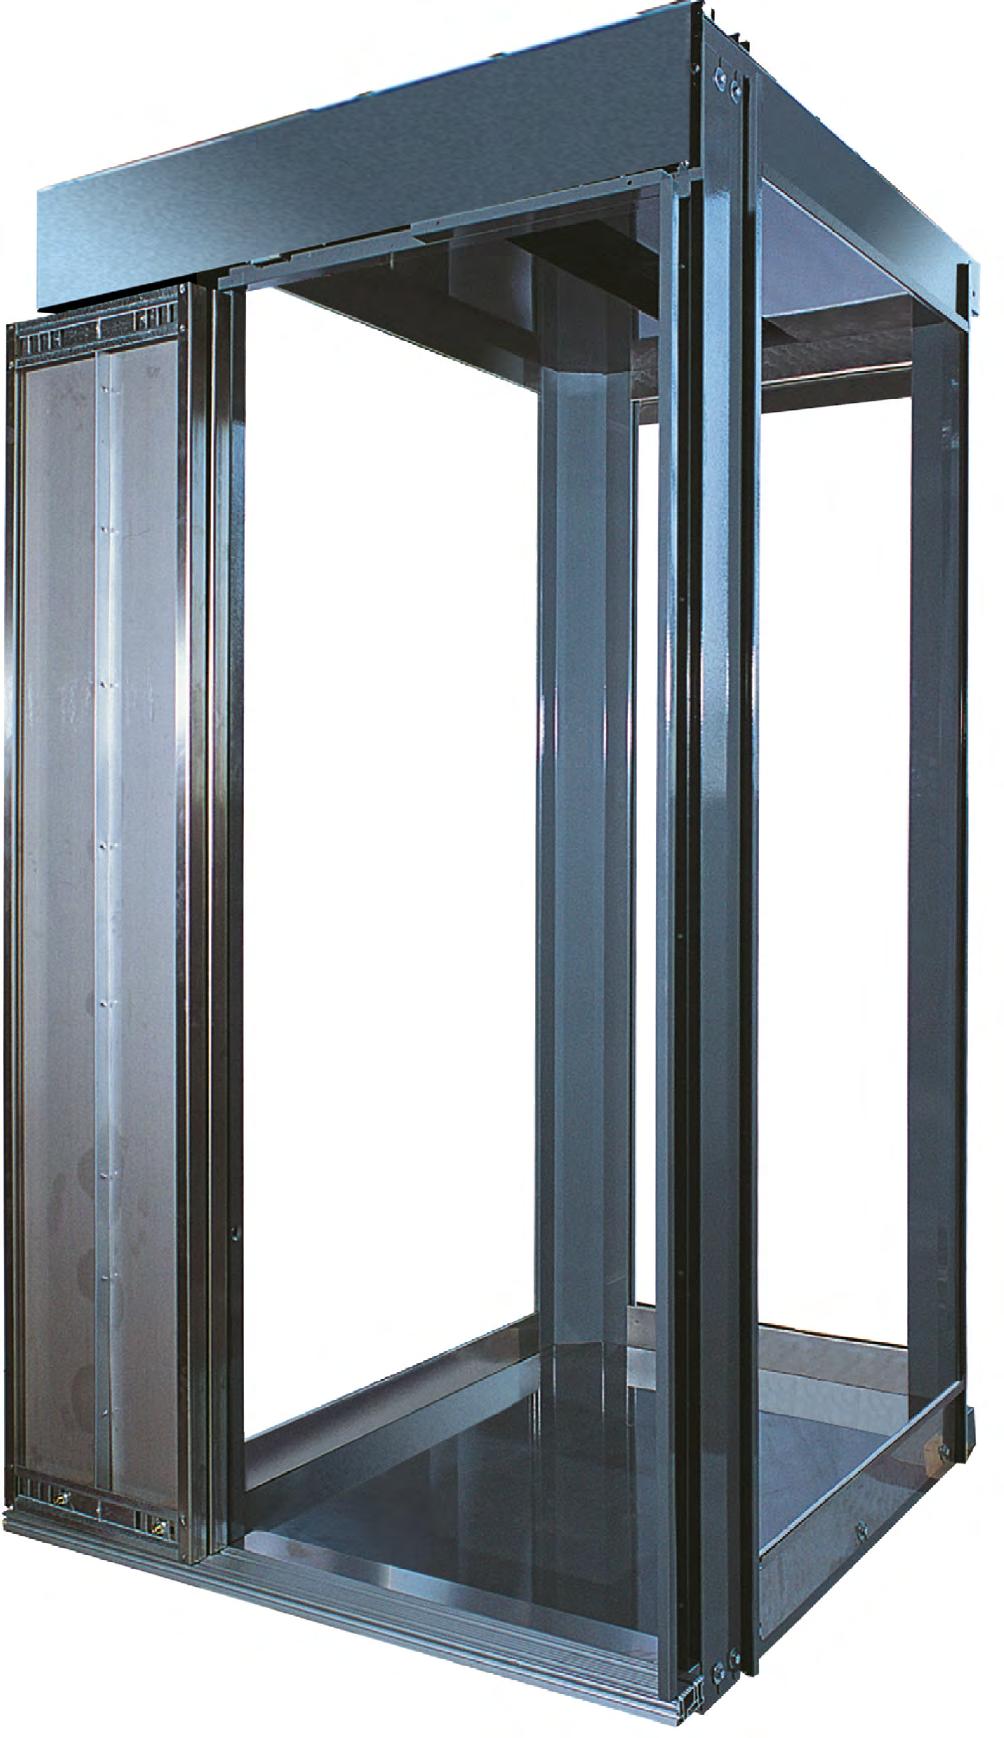 CABINA TMC (Tailor Made Car) > Gli ascensori GMV sono dotati di una cabina tailor made personalizzabile, solida e leggera, ideale per ascensori a basso consumo energetico.